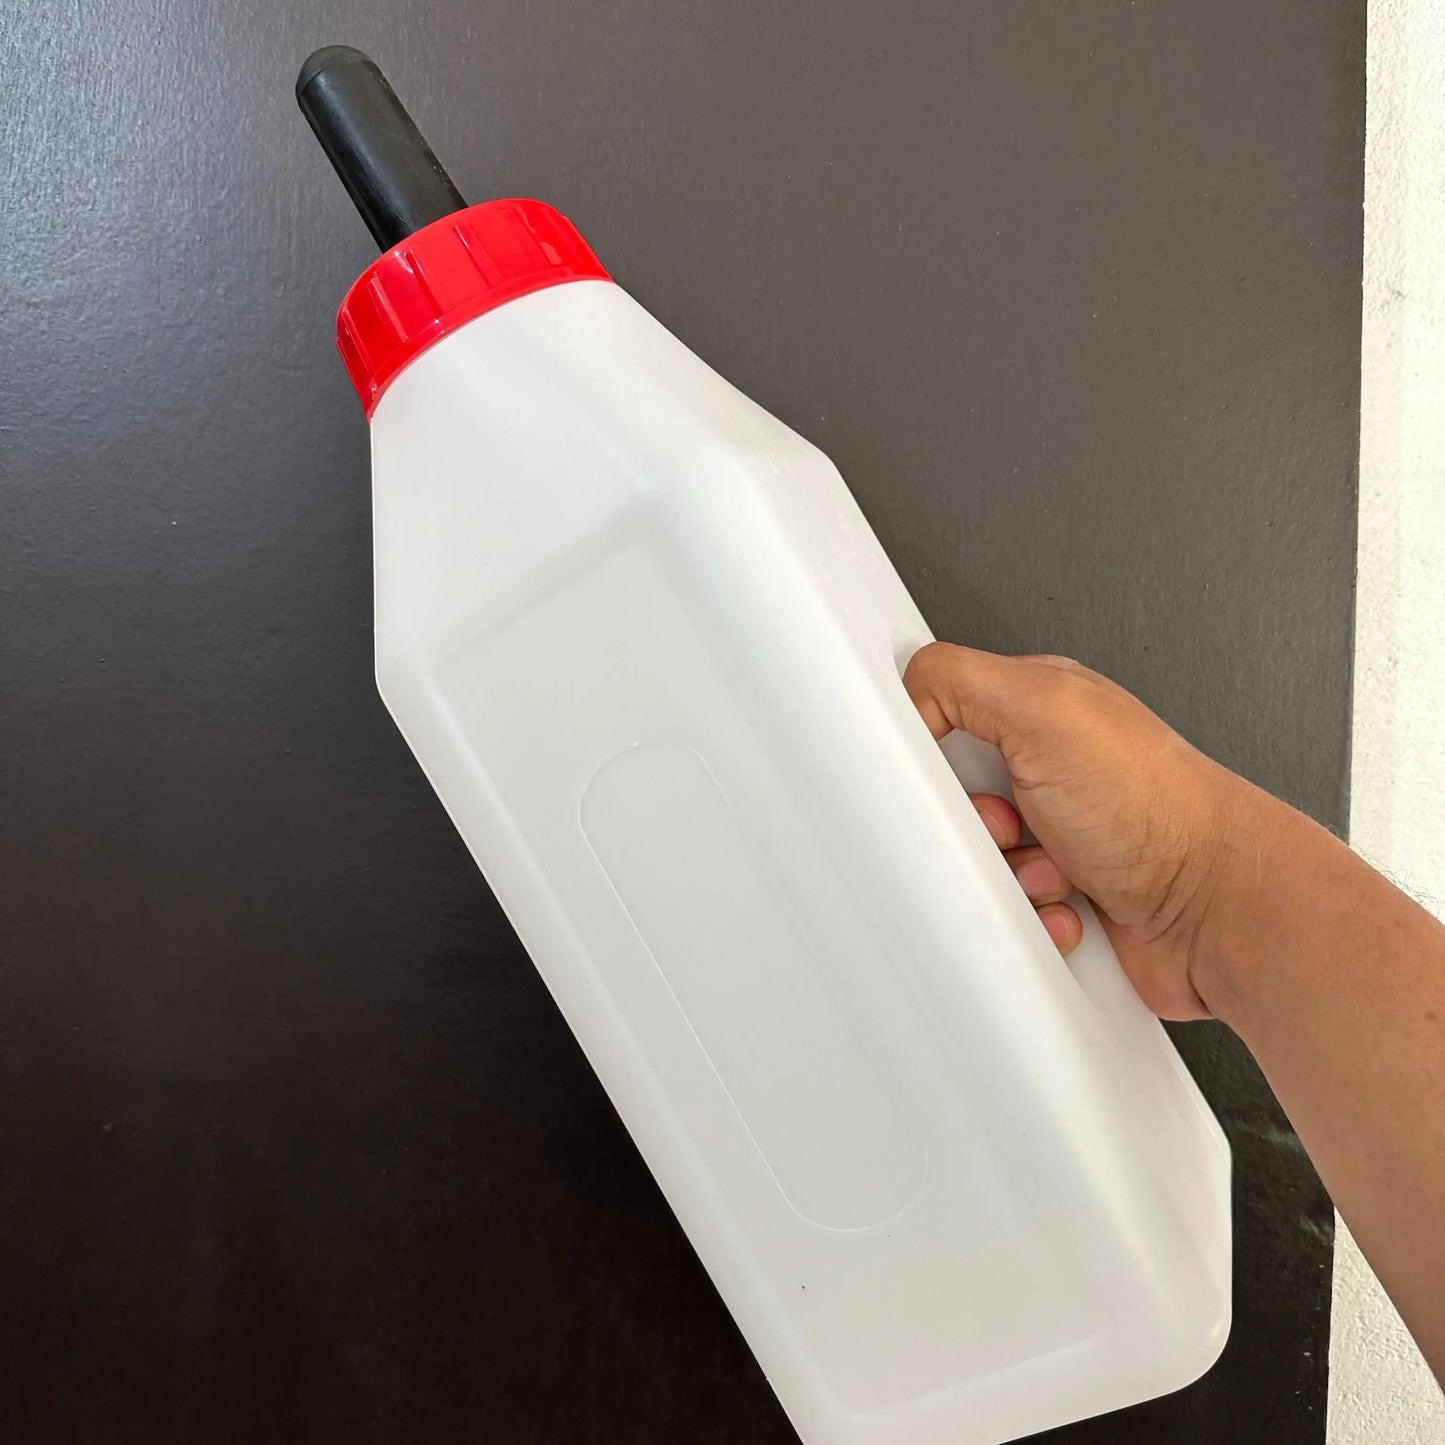 बछड़े के दूध की बोतल 2.5L